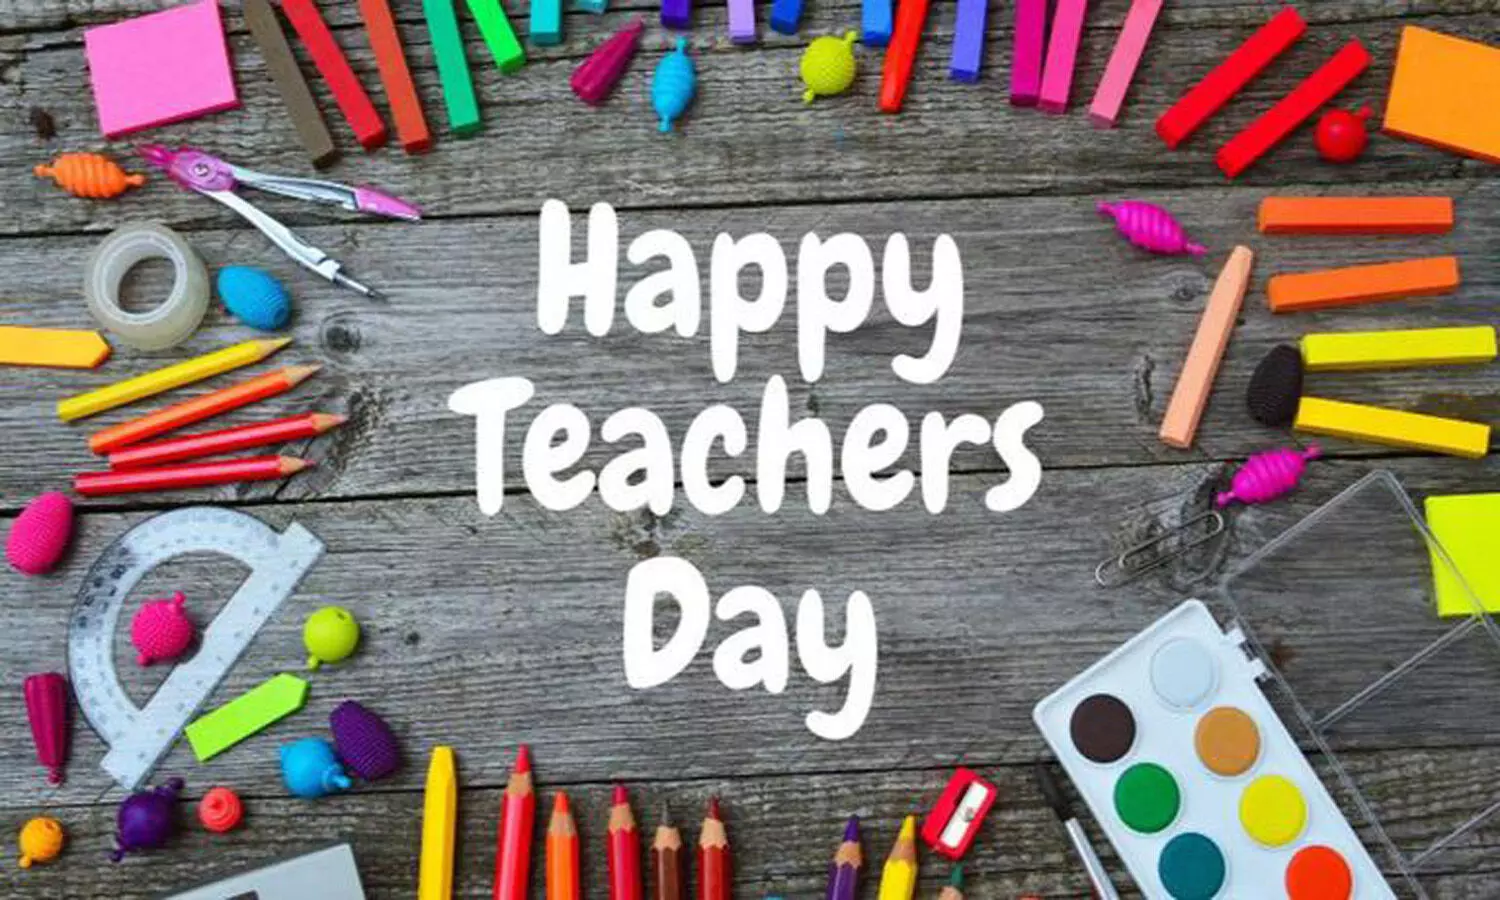 Happy Teachers Day 2021